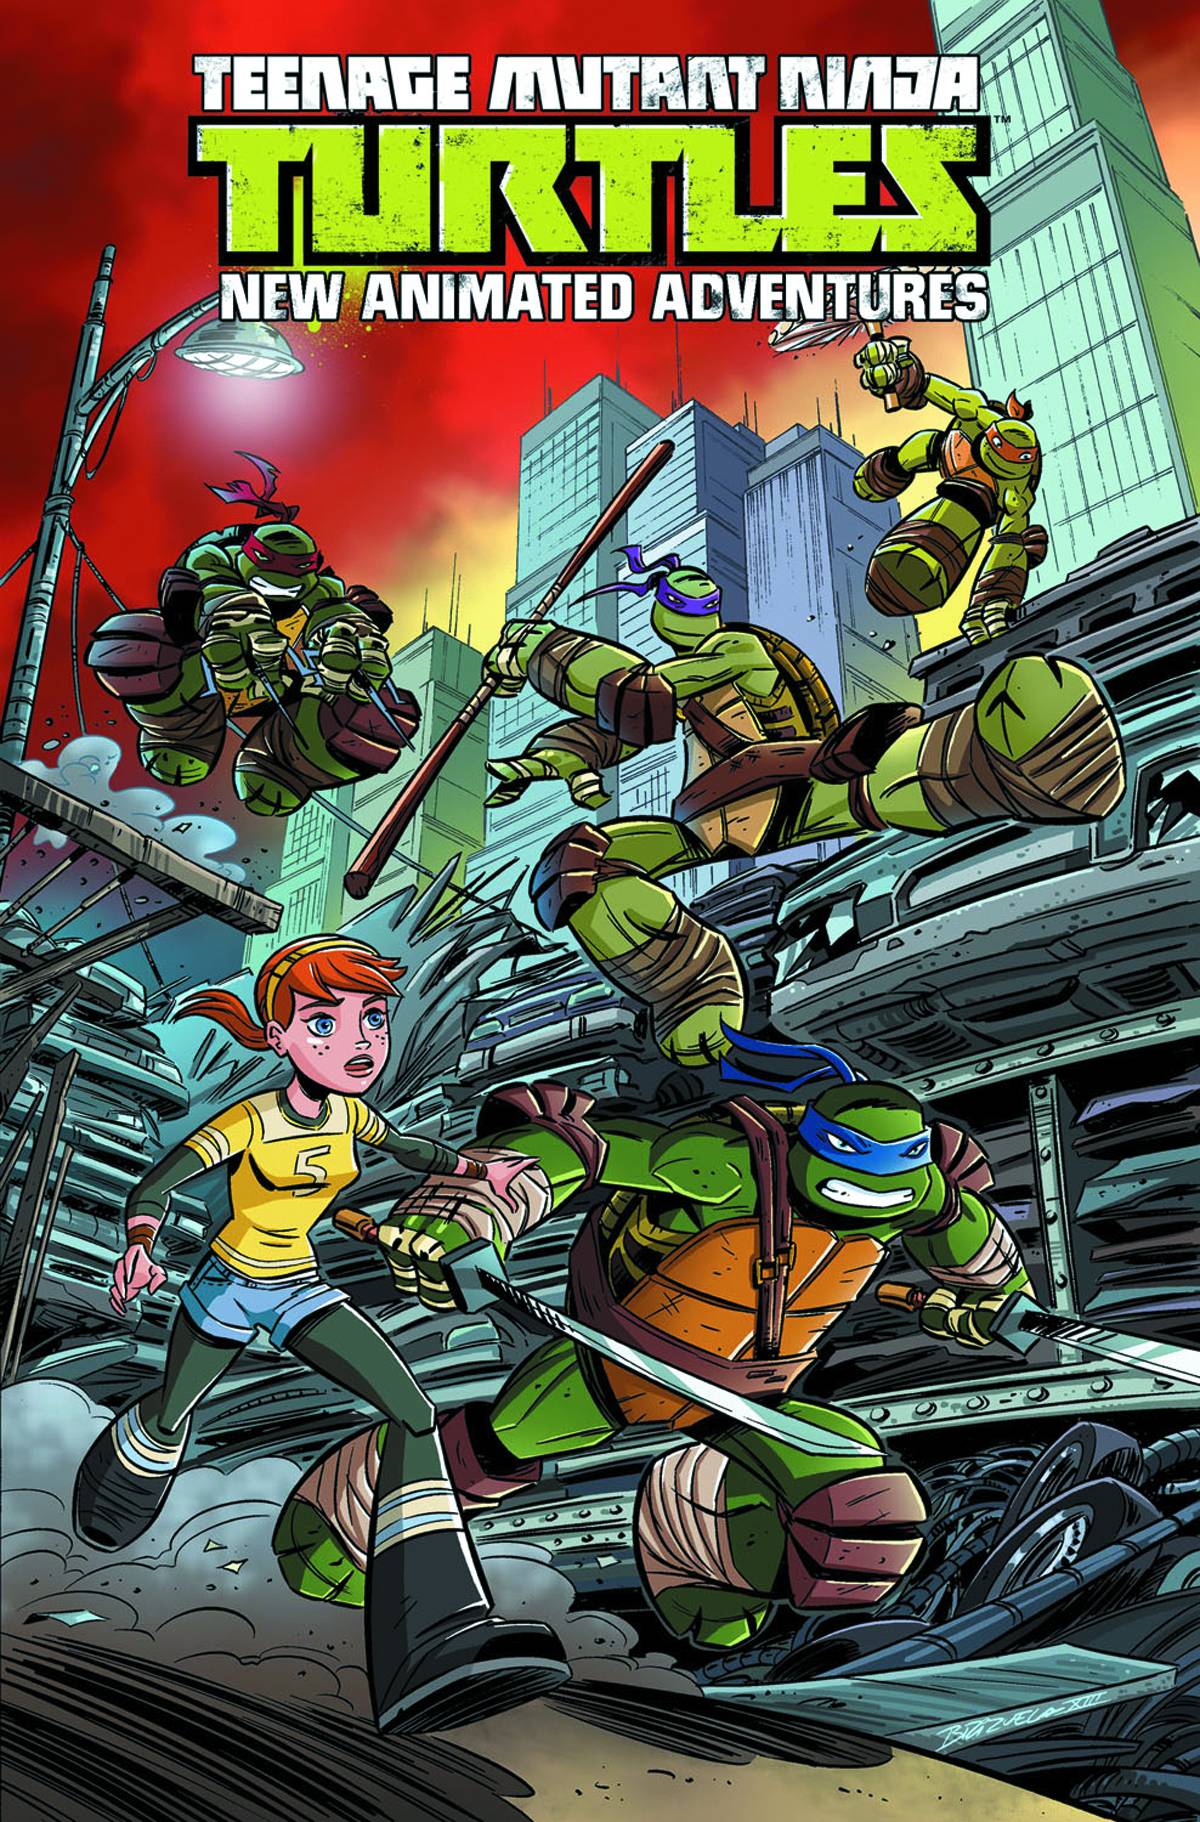 Teenage Mutant Ninja Turtles New Animated Adventures Graphic Novel Volume 1